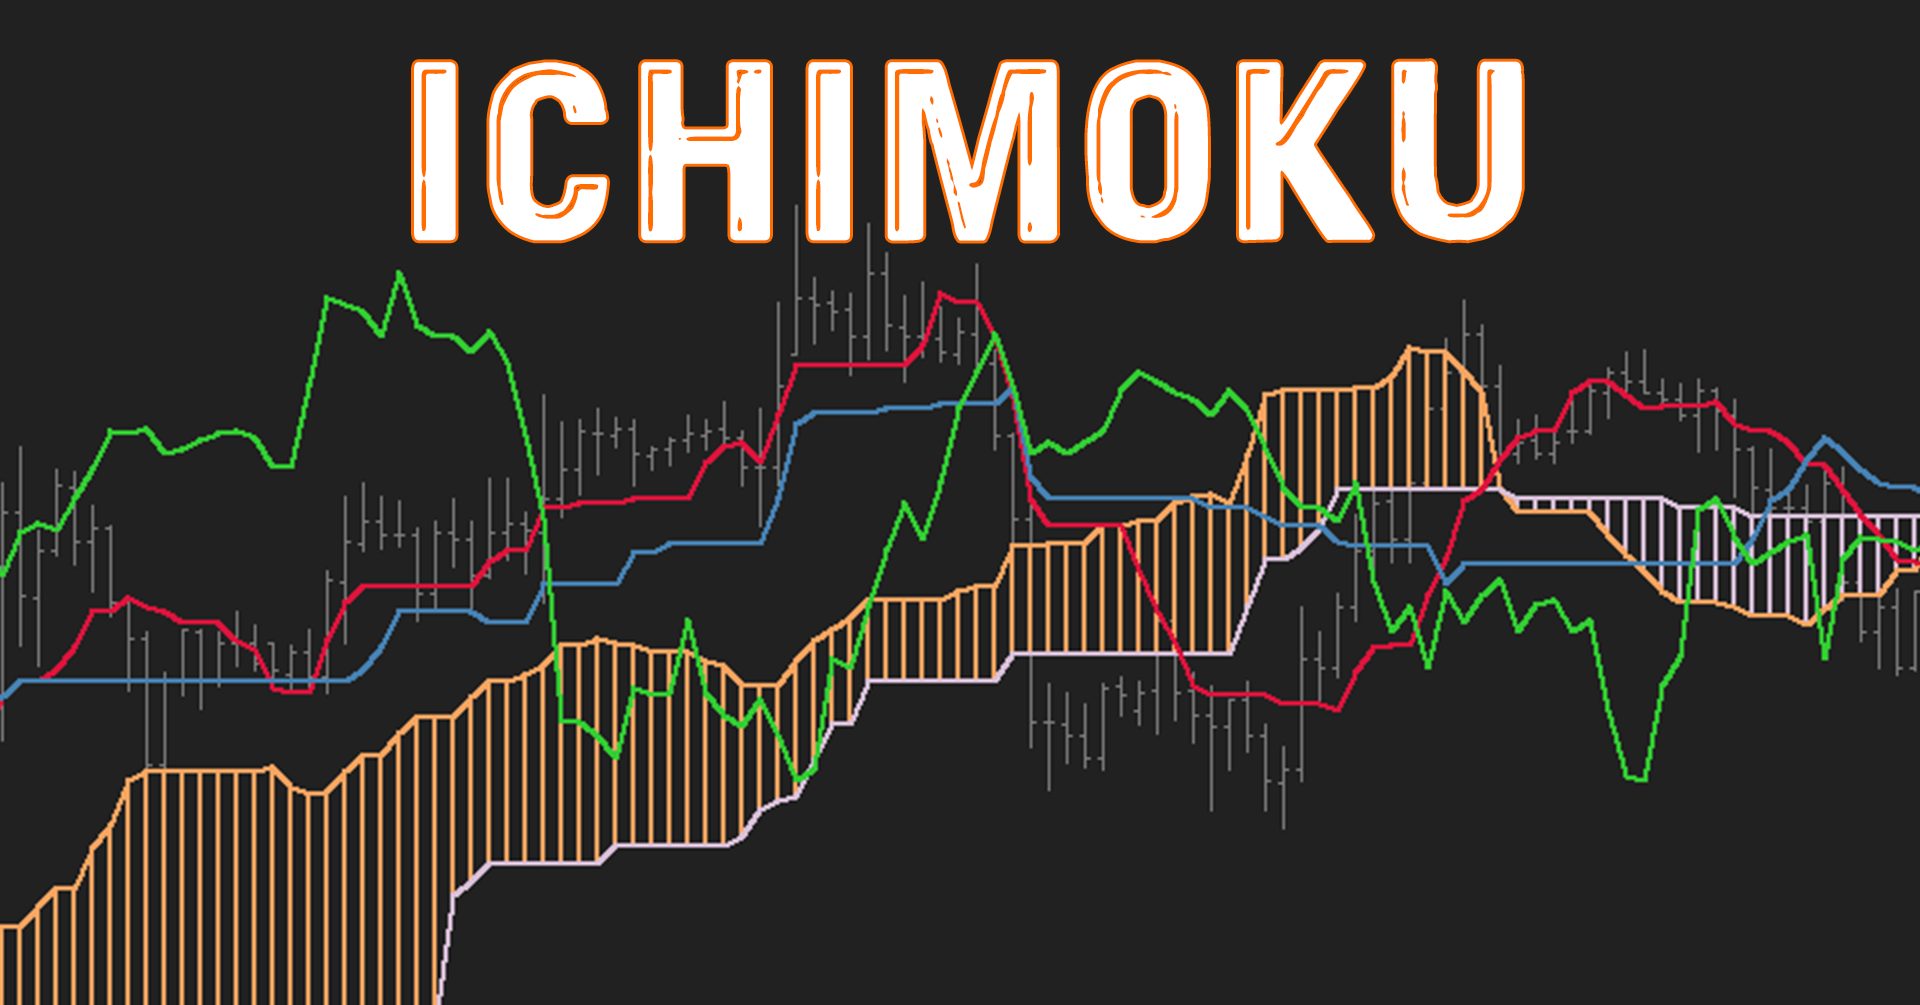 Mây Ichimoku là gì? Hướng dẫn sử dụng chi tiết chỉ báo Mây Ichimoku